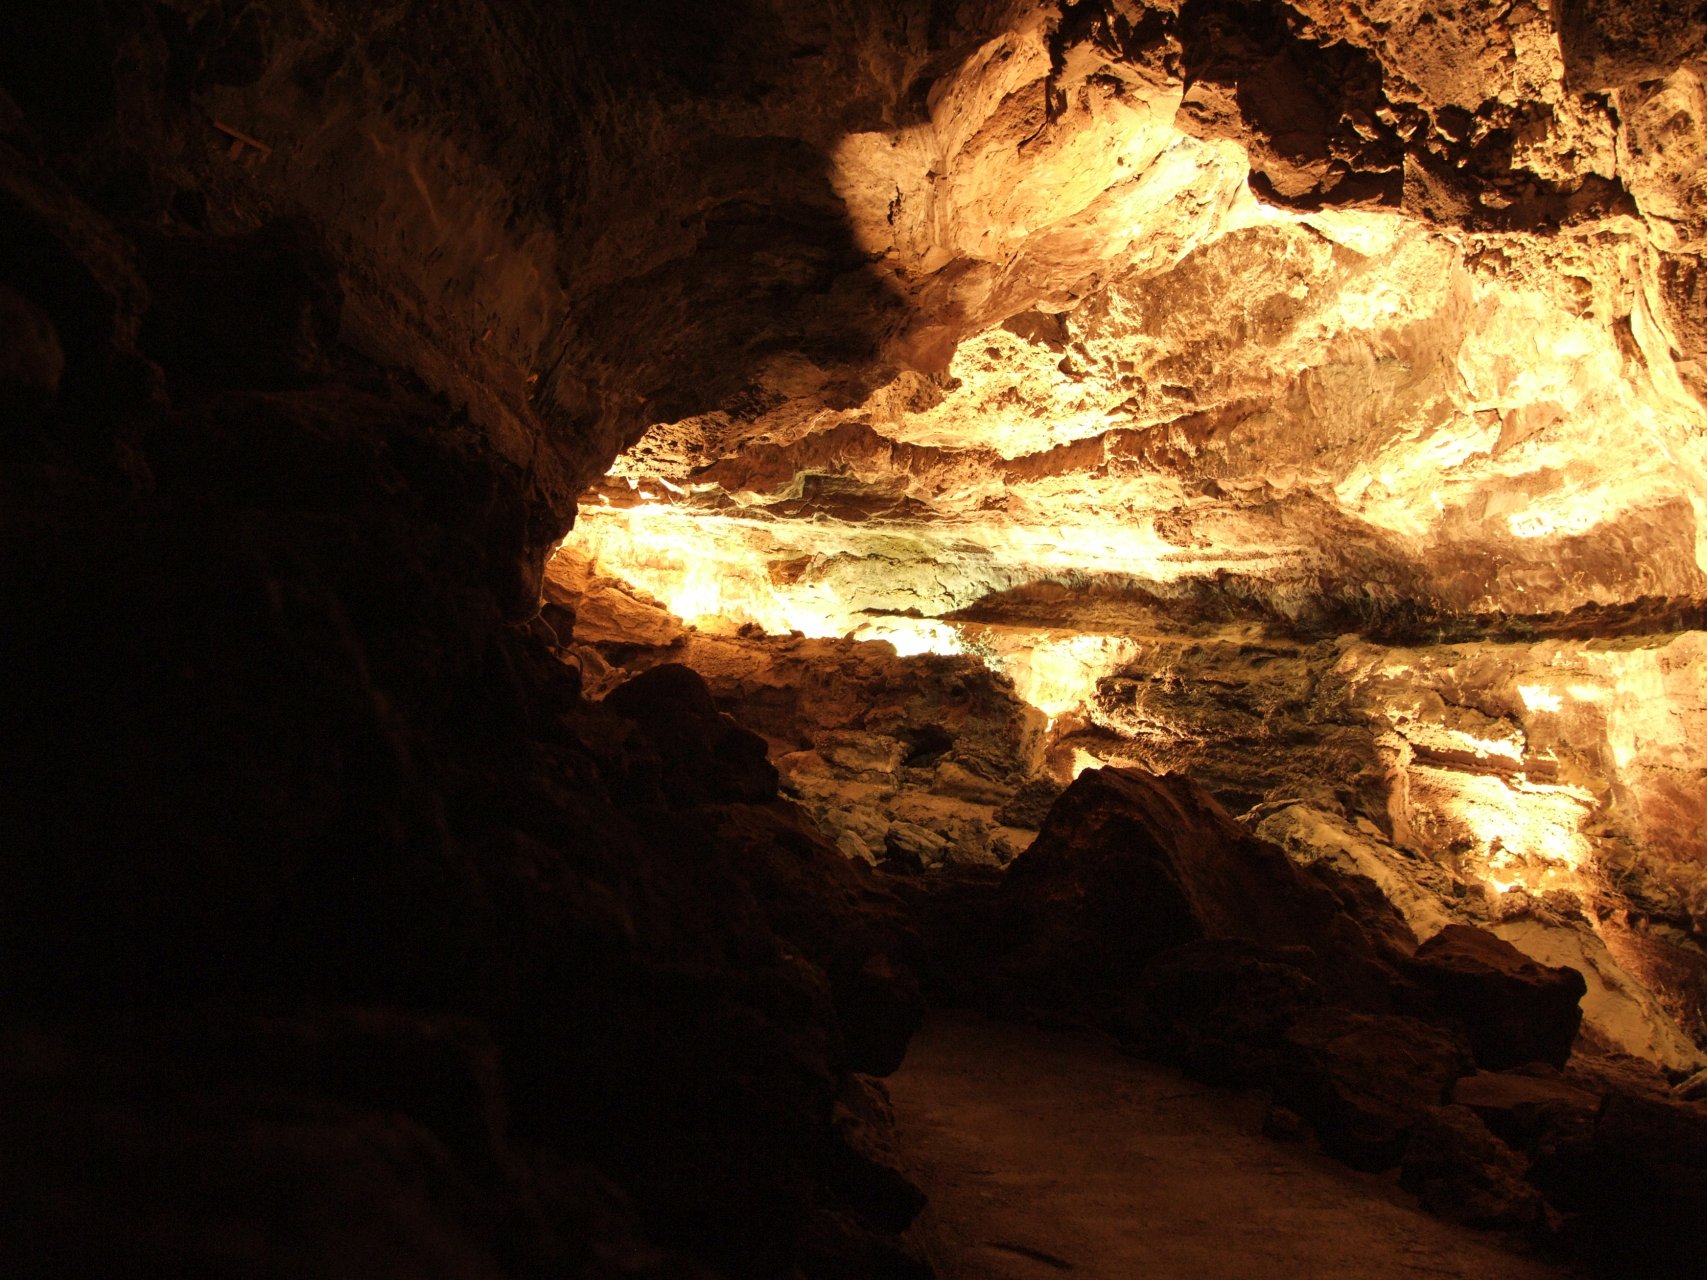 Iluminacje świetlne wewnątrz jaskini